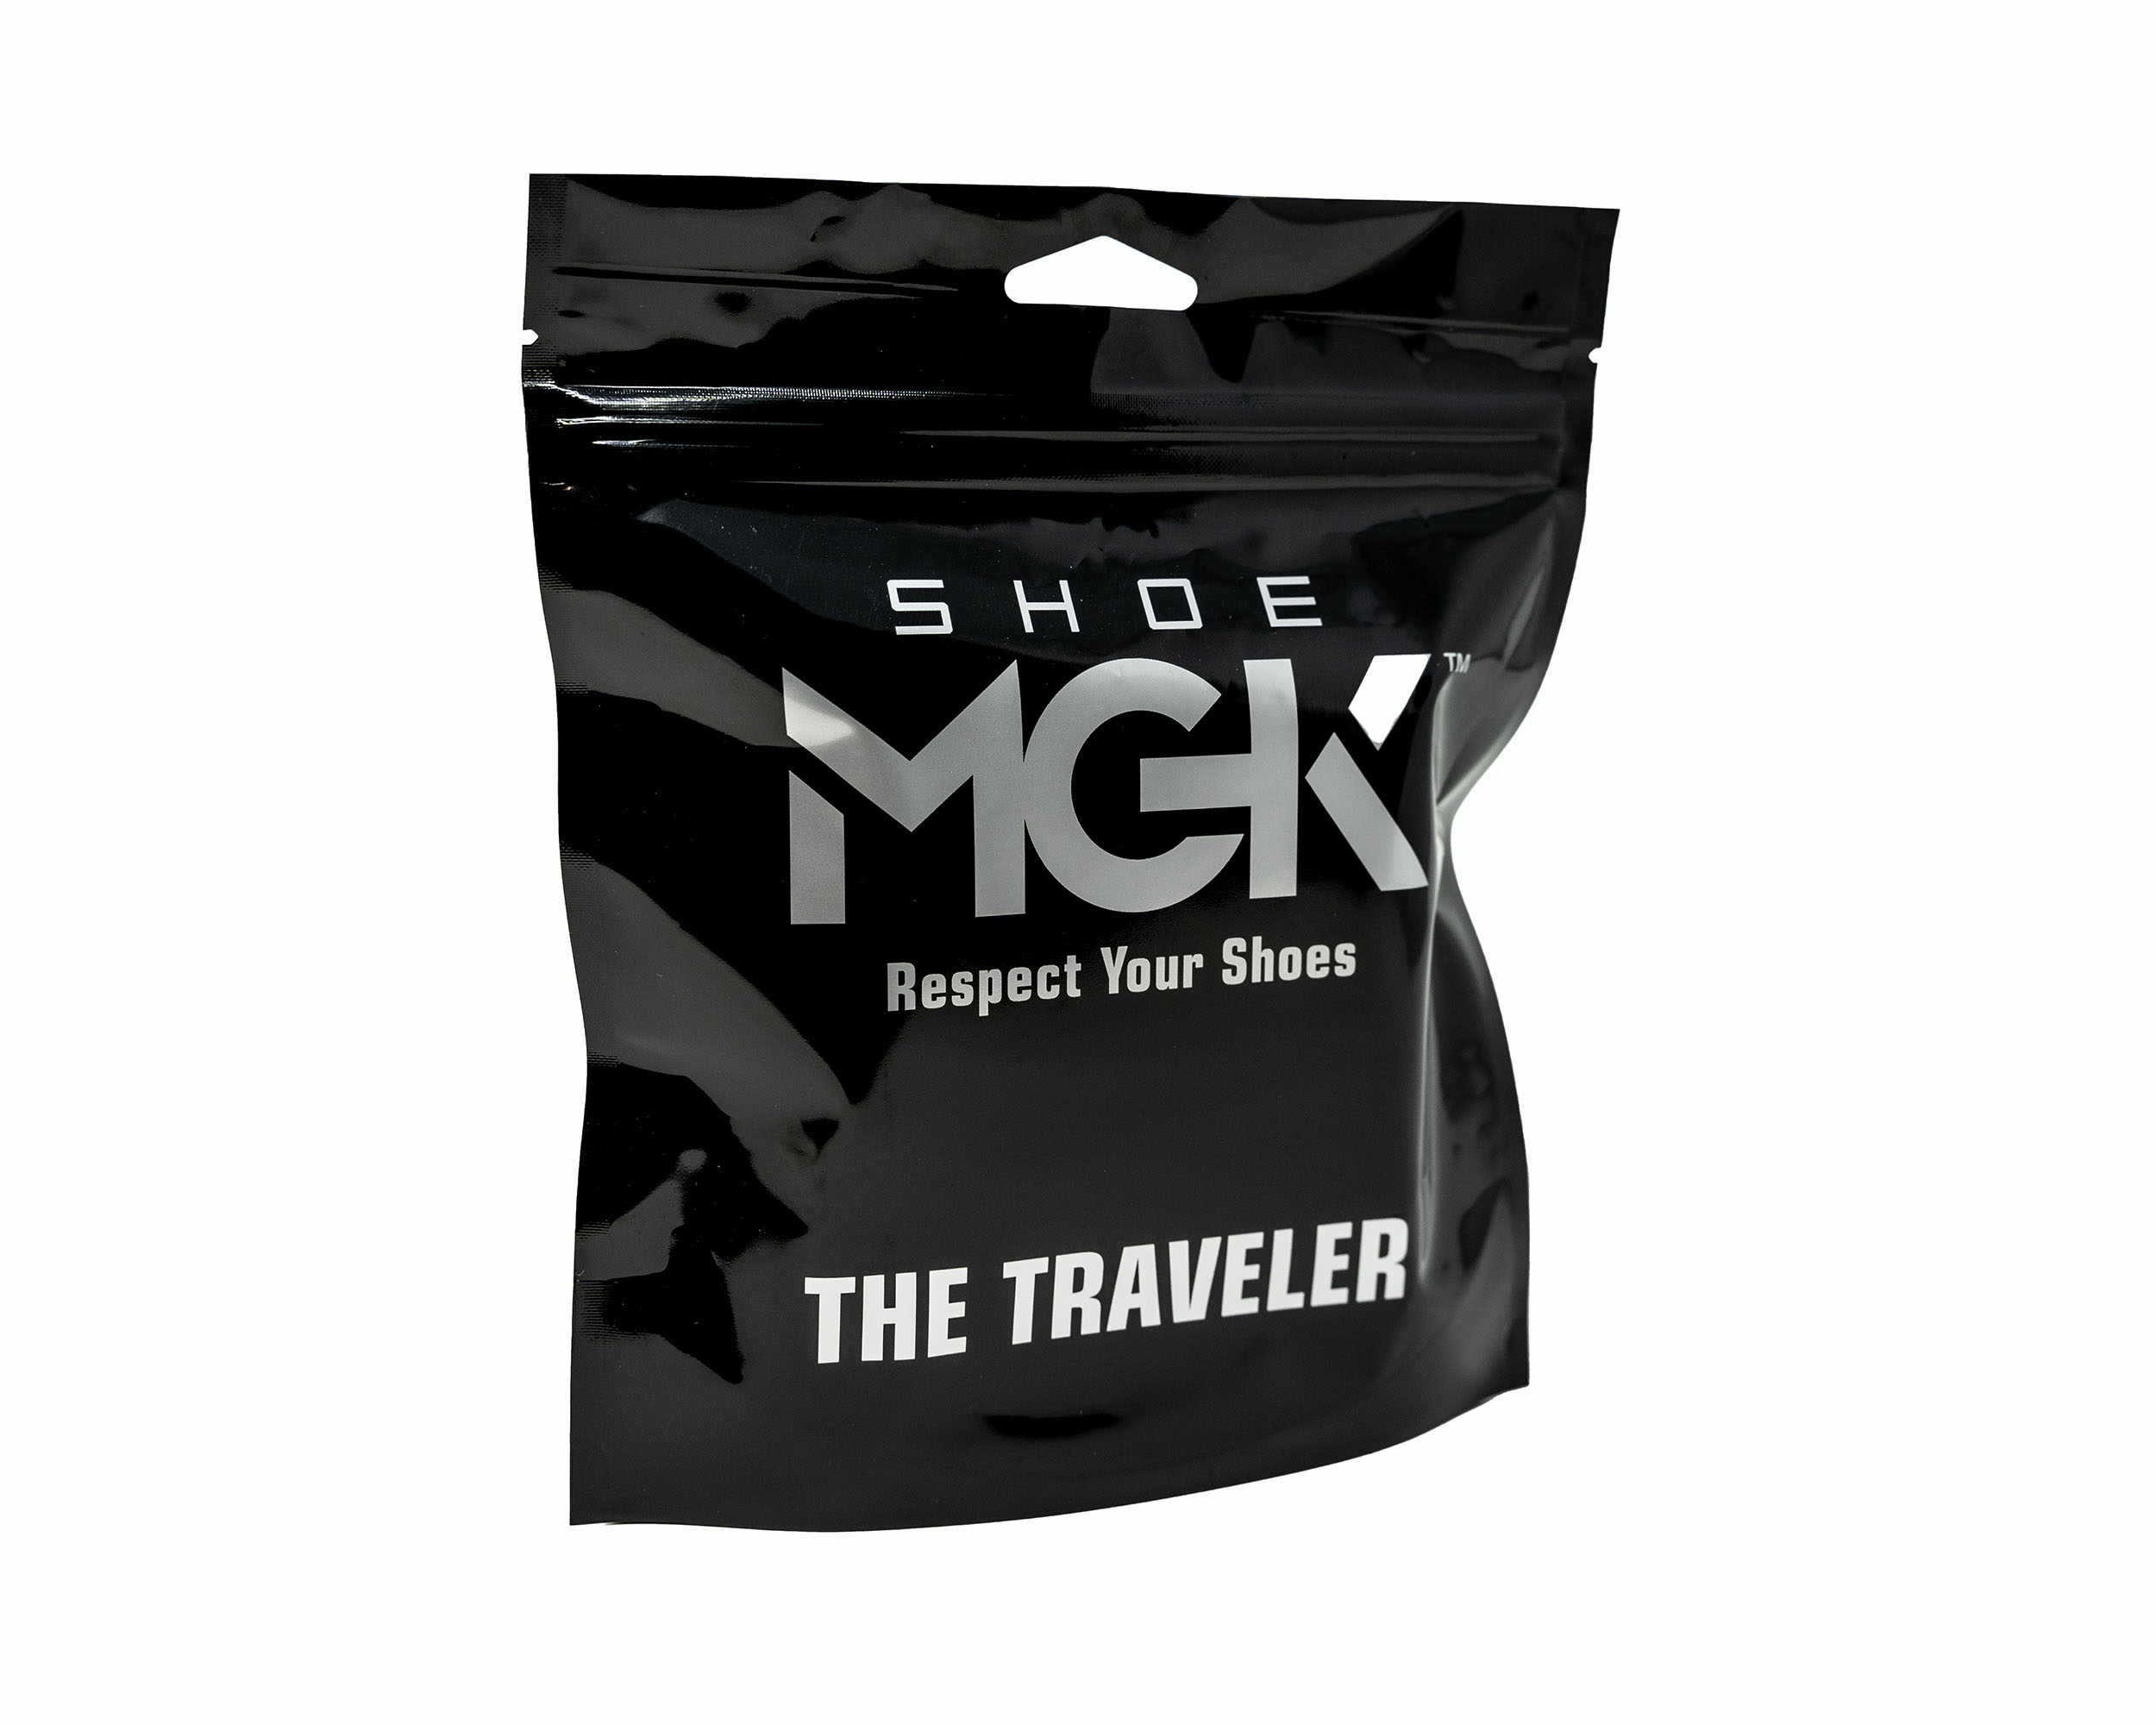 SHOE MGK Traveler Kit - Shoe MGK